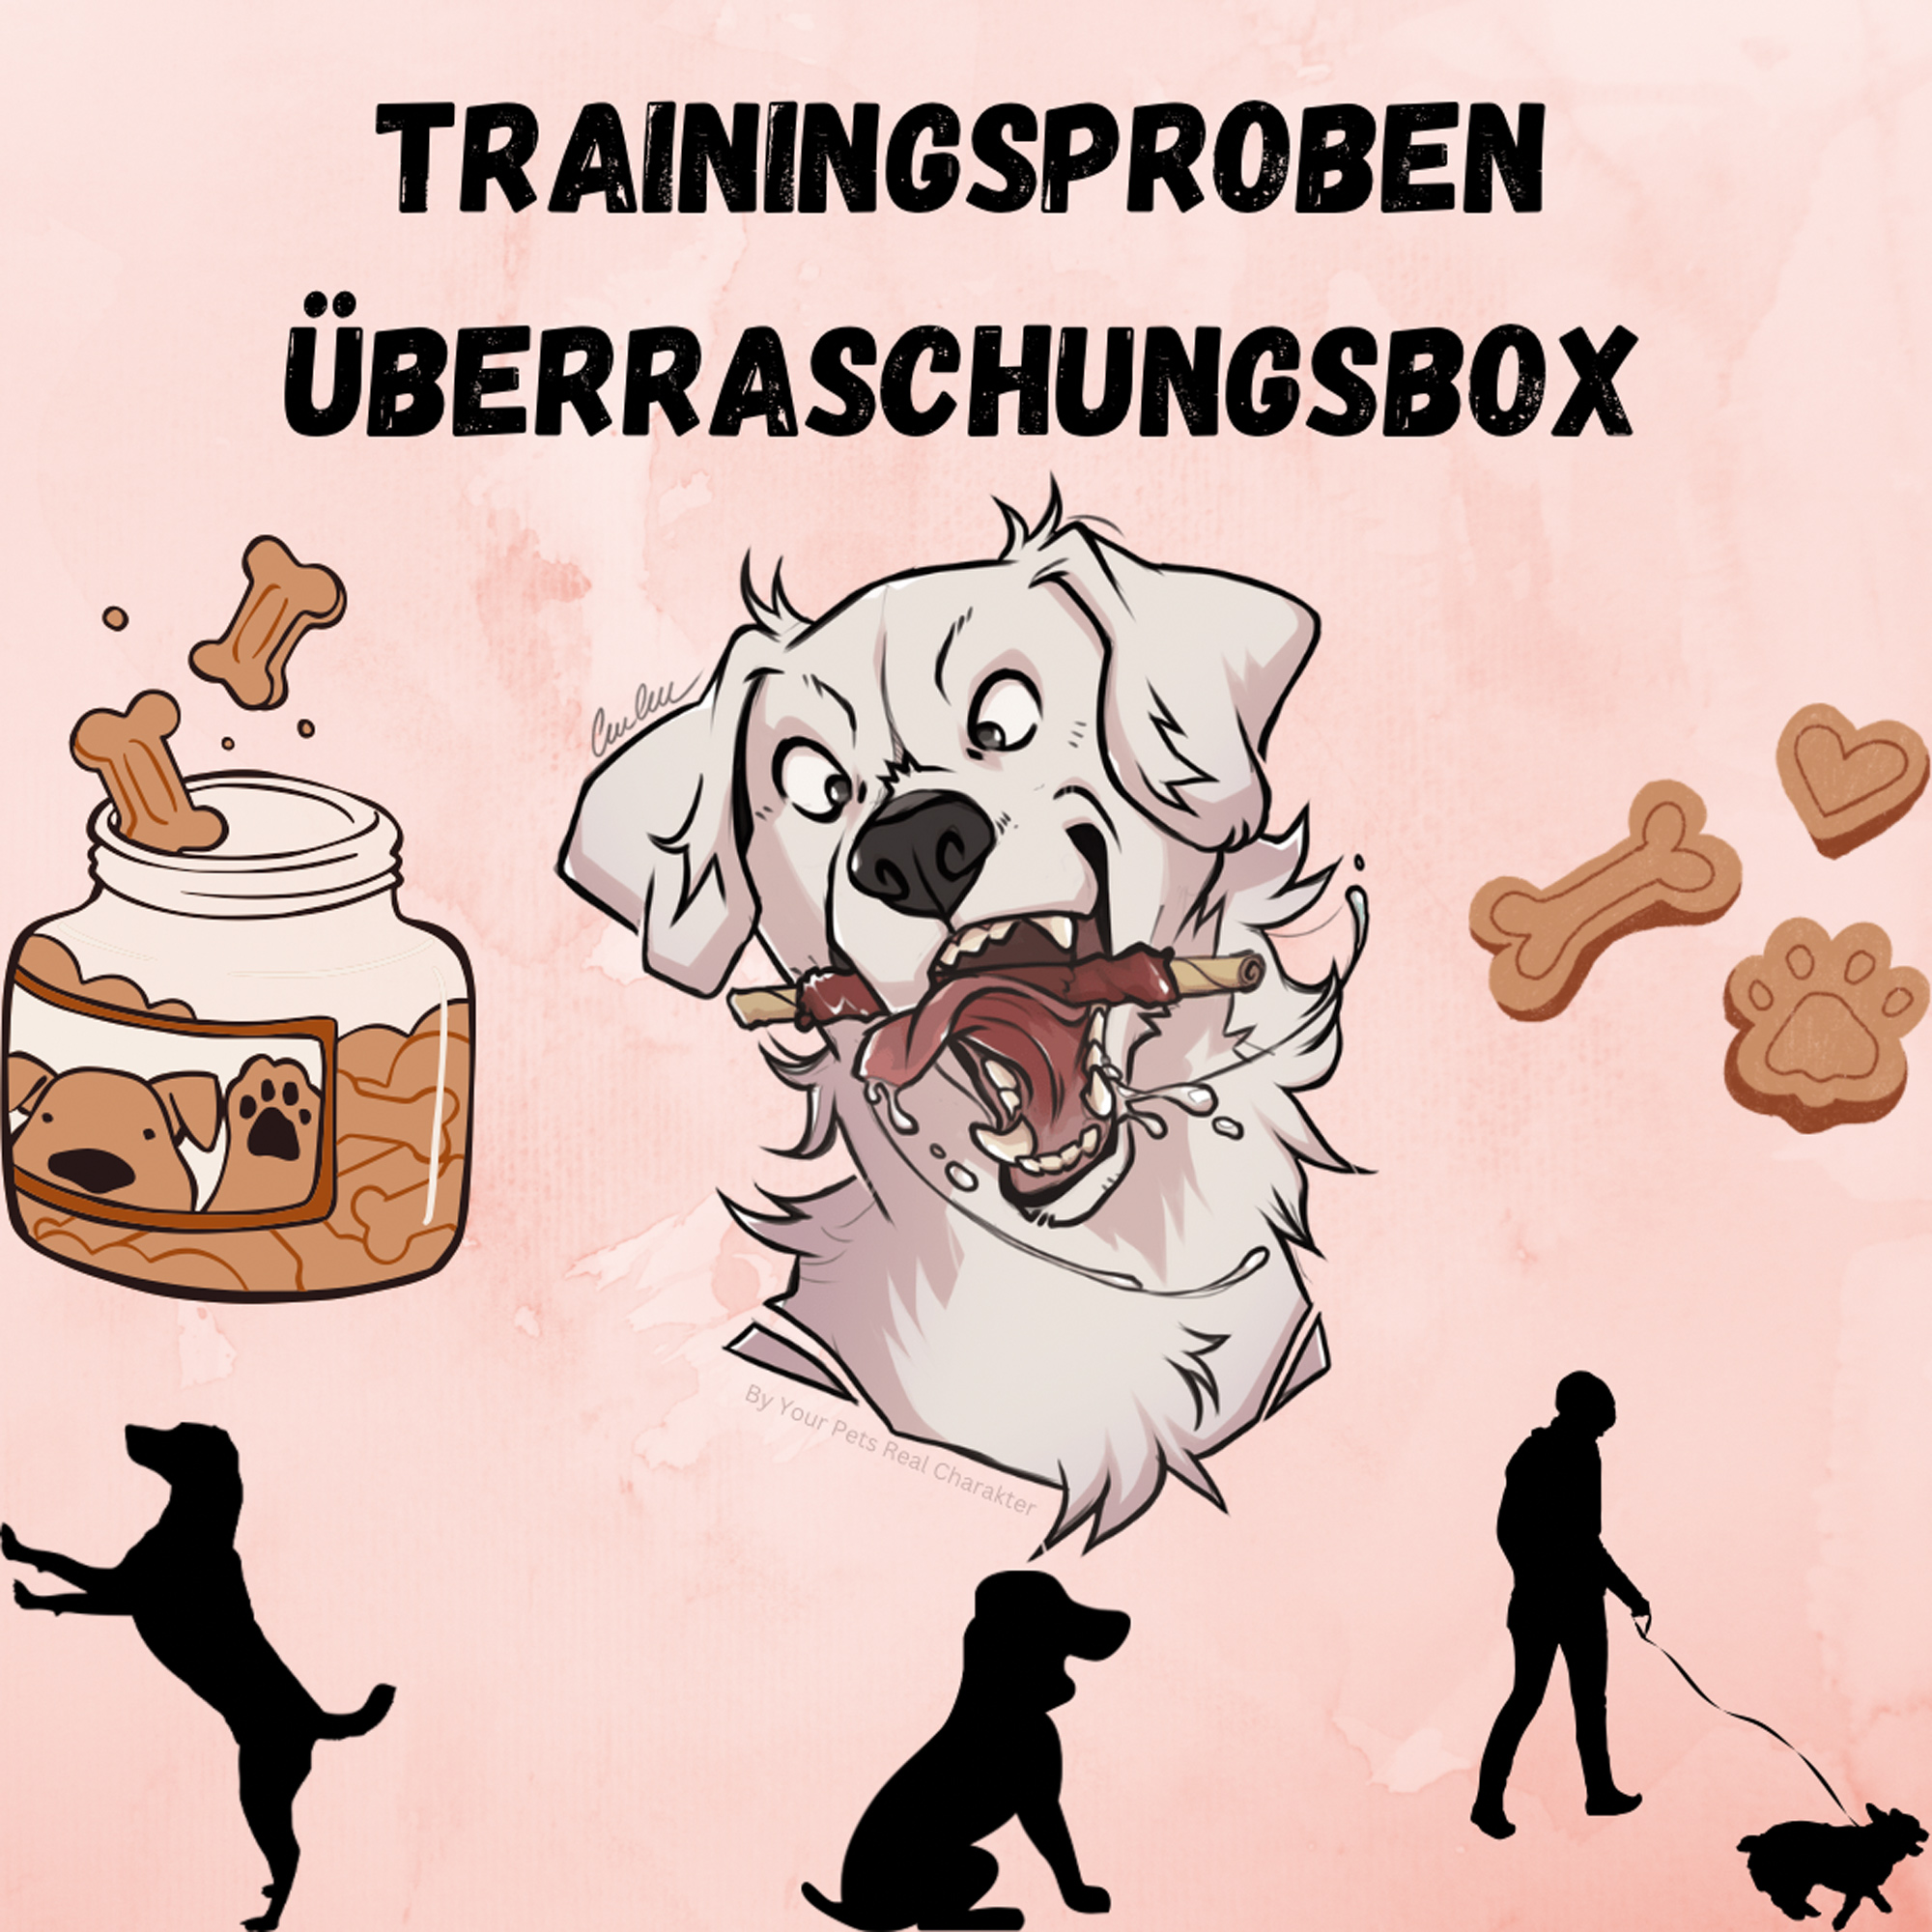 Trainingssnack-Überraschungsbox (Proben)